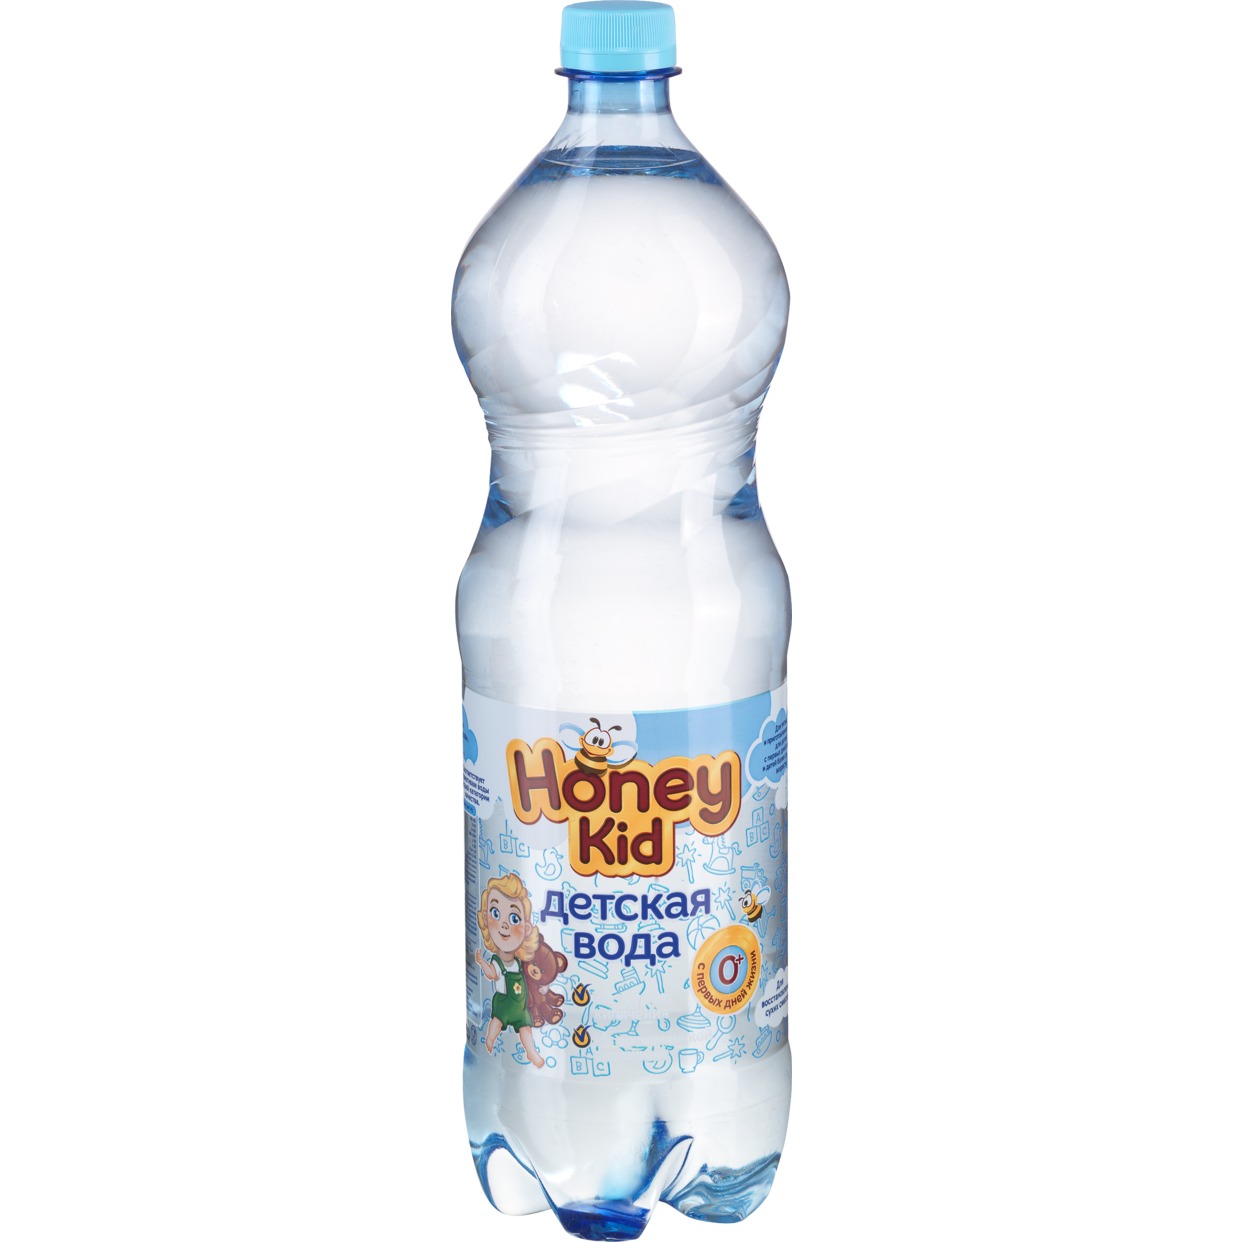 Вода питьевая для детского питания «Для детей» негазированная, 1,5л